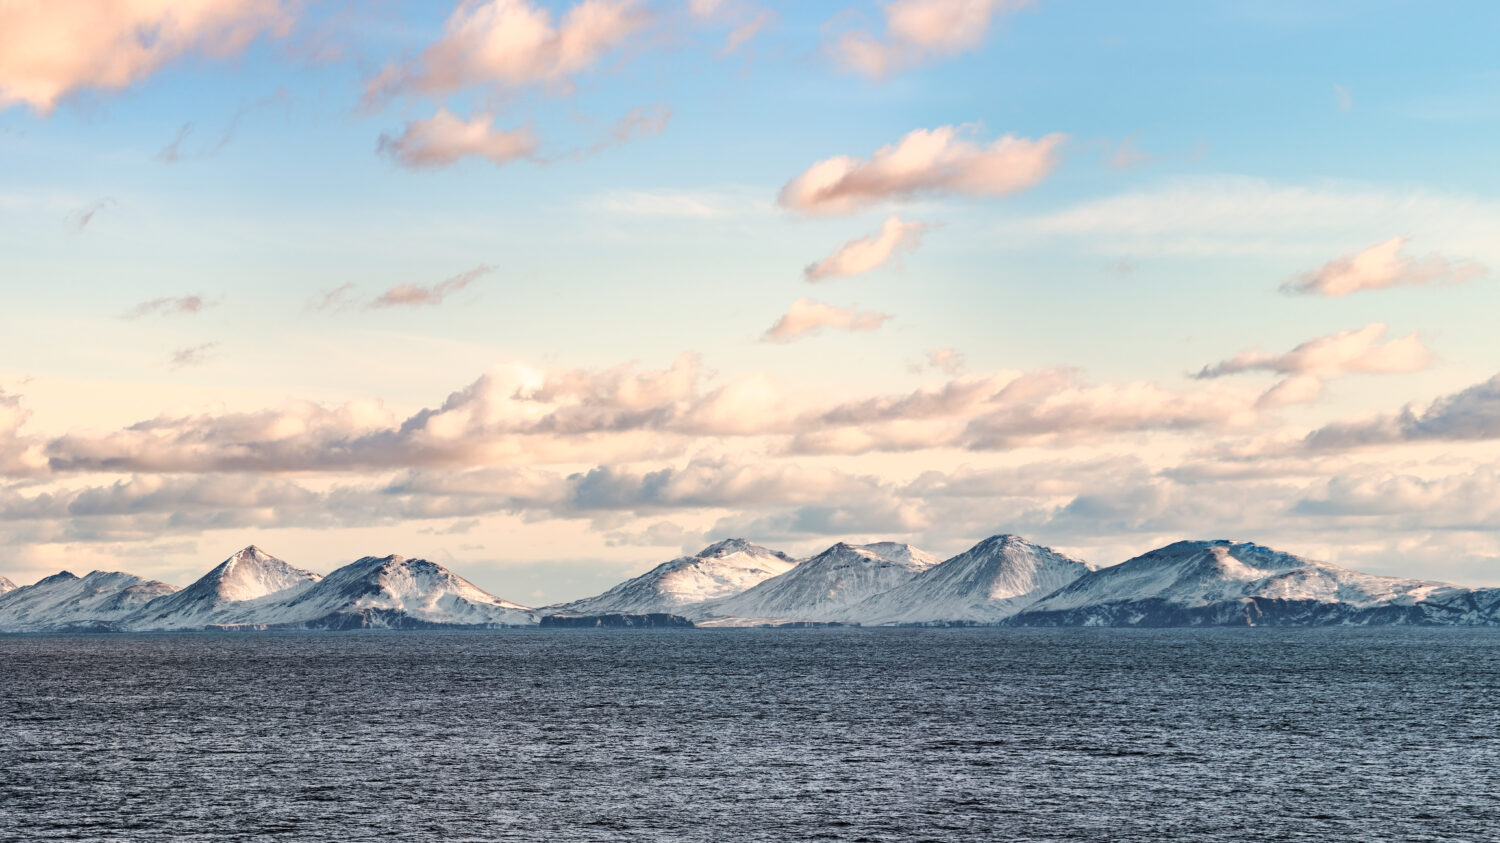 Cime innevate, ghiacciai e rocce delle isole Aleutine nella soleggiata giornata invernale visti dalla nave che passa nel mare calmo